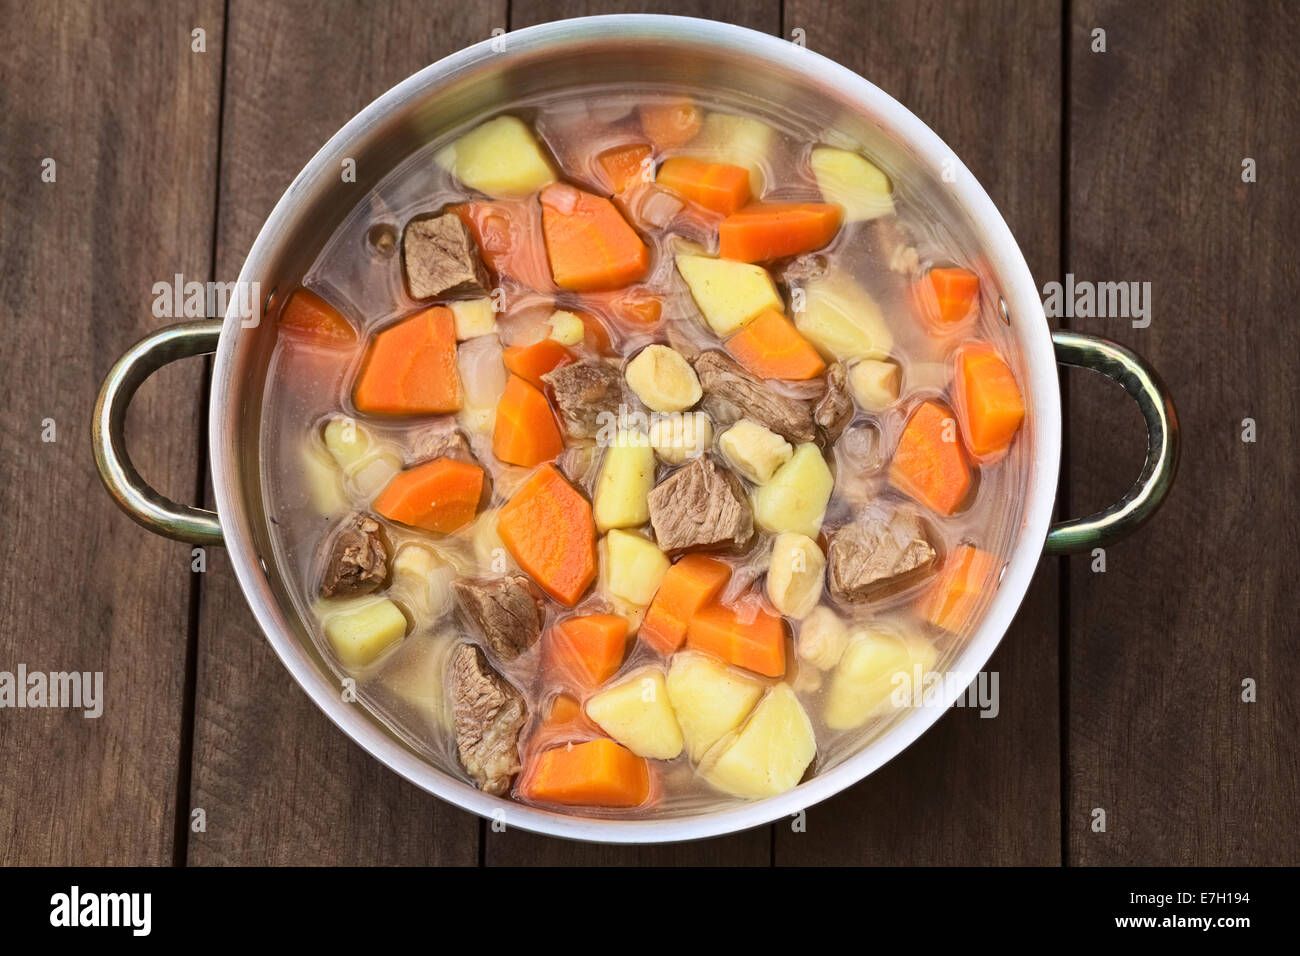 Tradizionale zuppa ungherese chiamato Gulyasleves fatta di carni bovine, patata, carota, cipolla, csipetke (pasta fatta in casa) e paprica Foto Stock